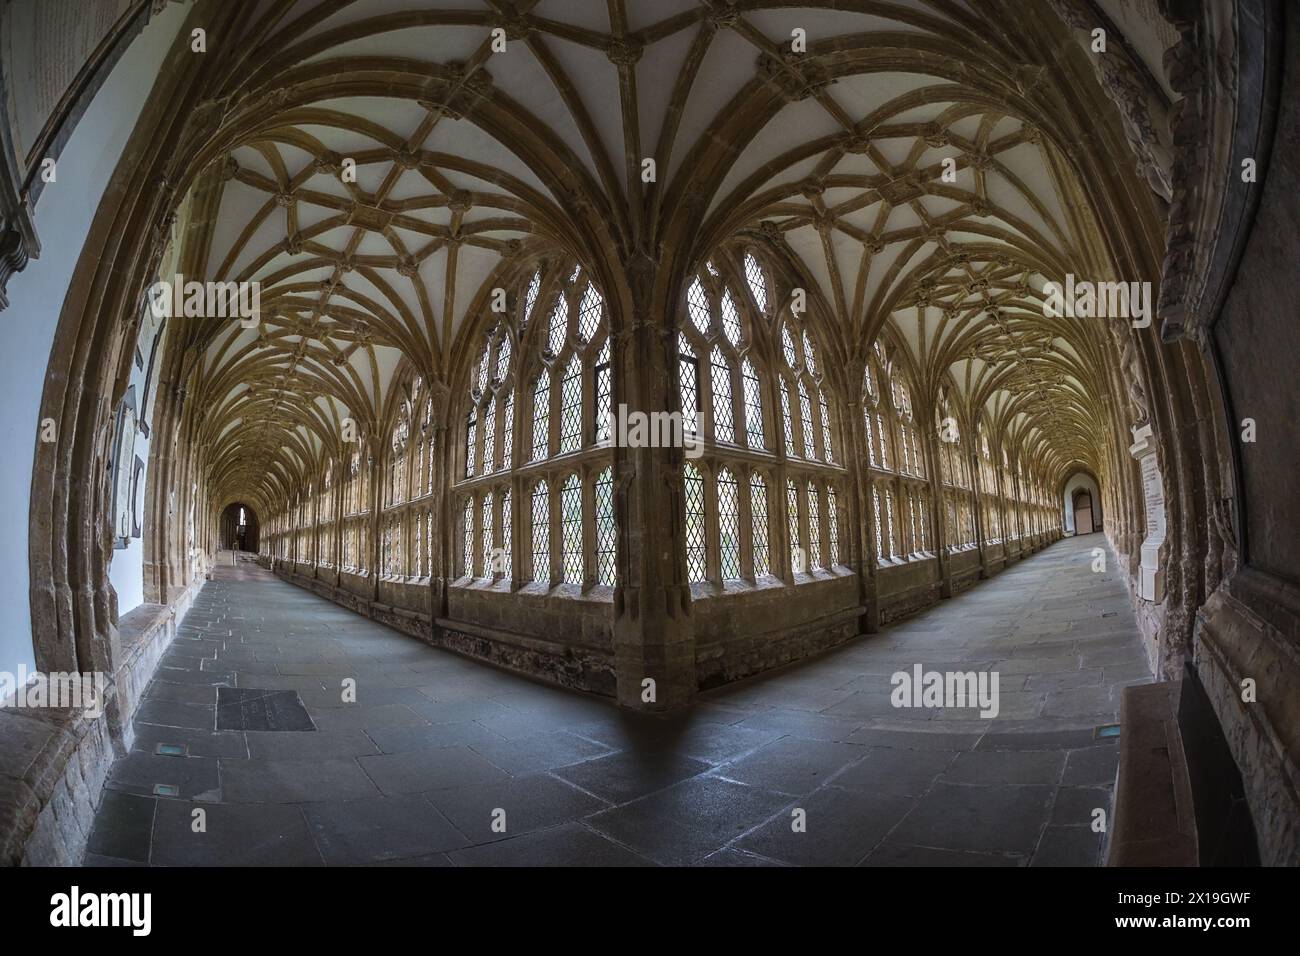 Immagine con obiettivo fisheye dell'interno della cattedrale di Wells Foto Stock